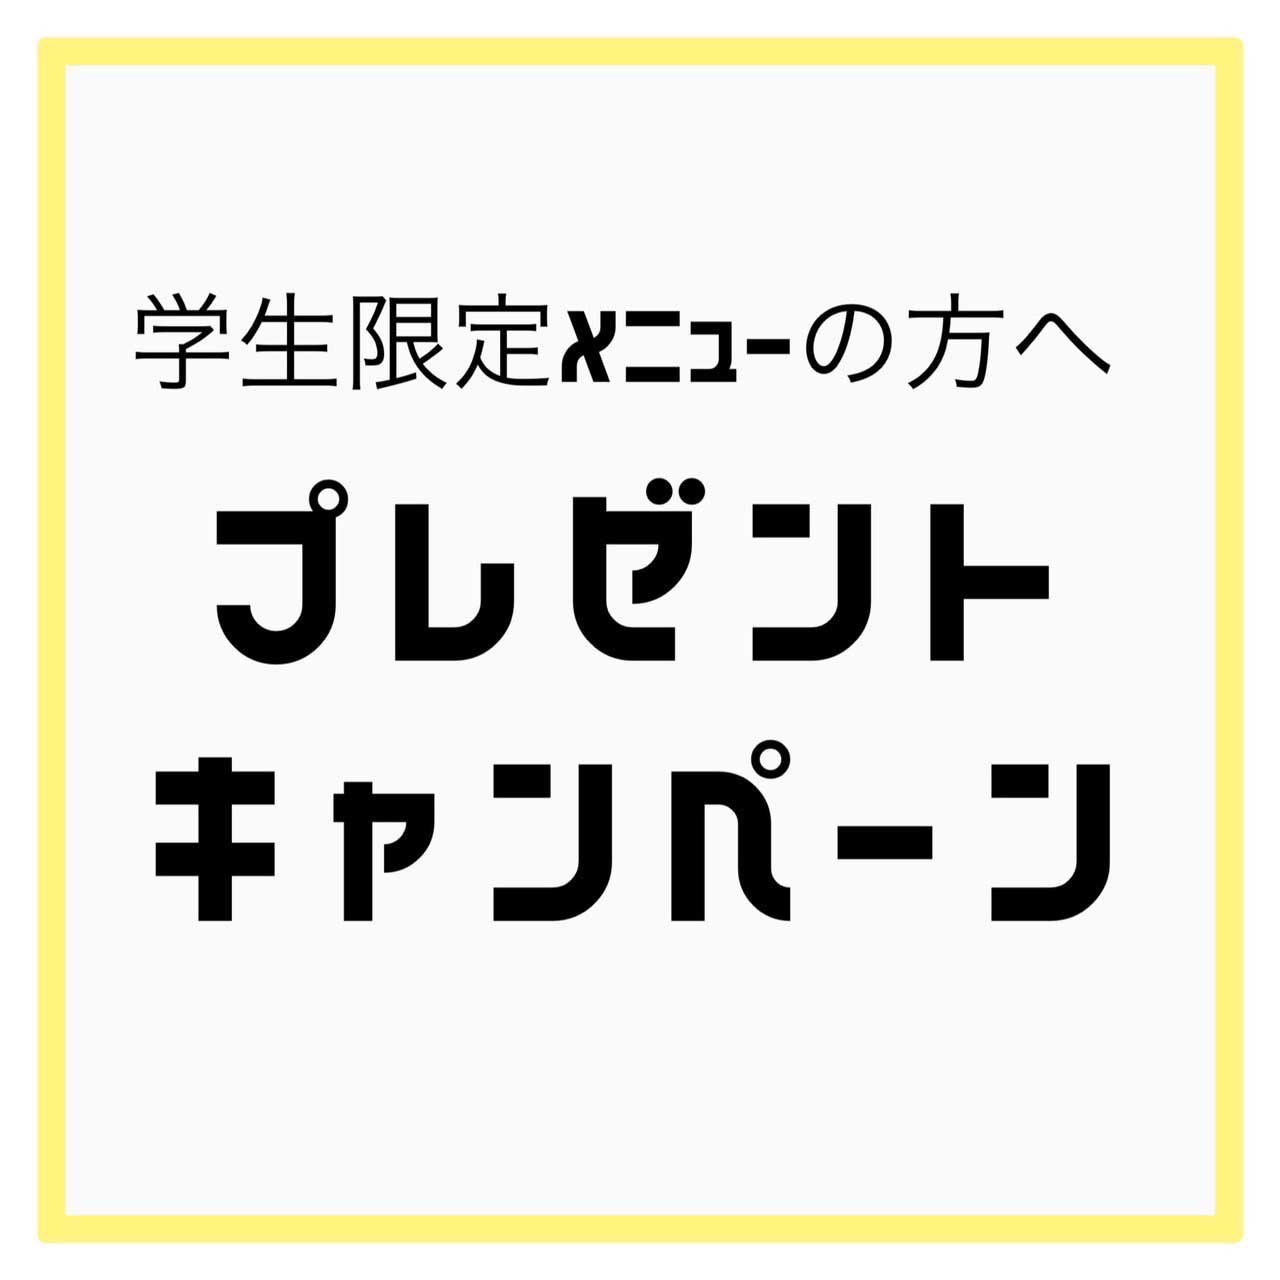 六甲店 - 学生限定メニューの方へプレゼントキャンペーン